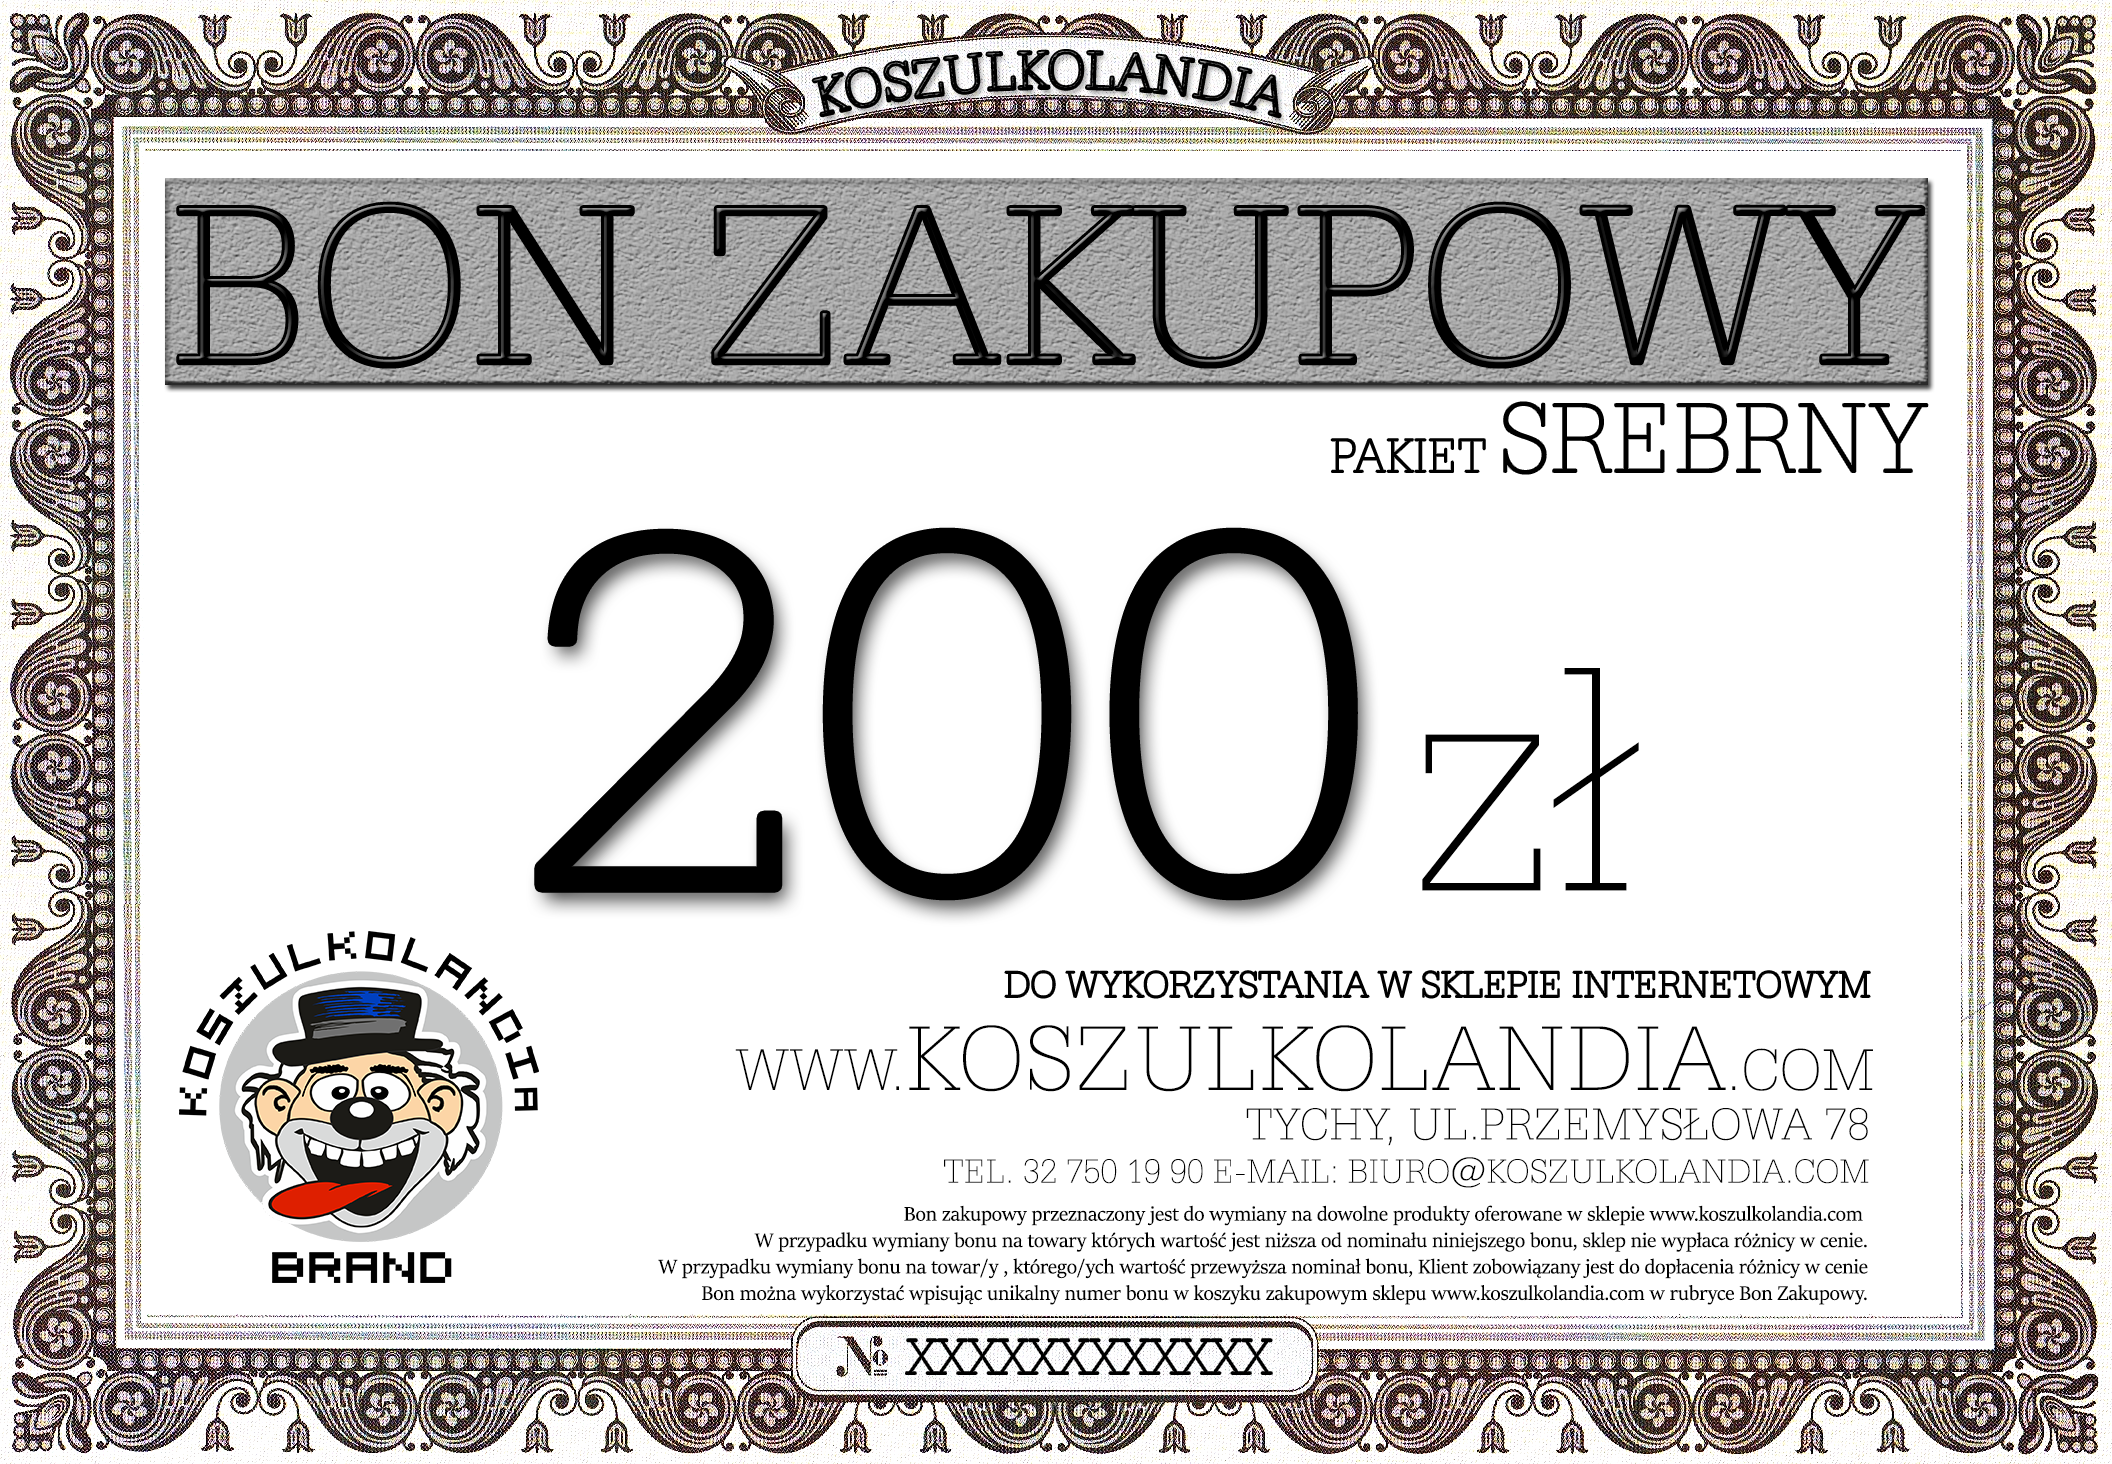 Bon ZAKUPOWY 200 zł 